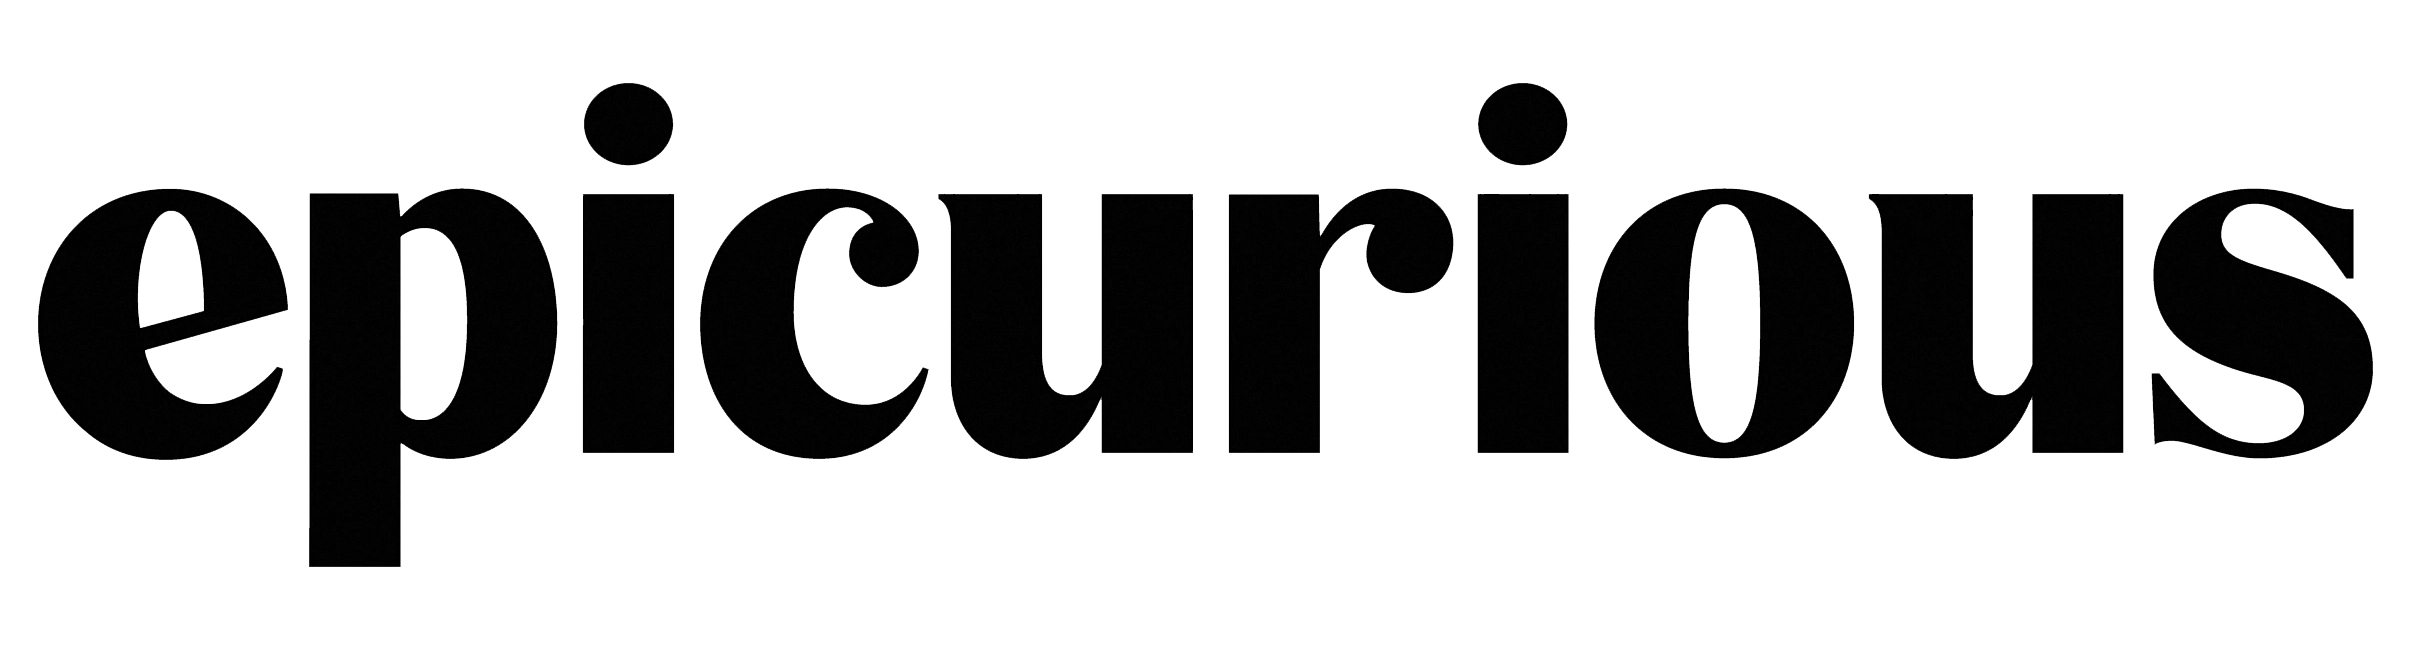 epicurious Logo